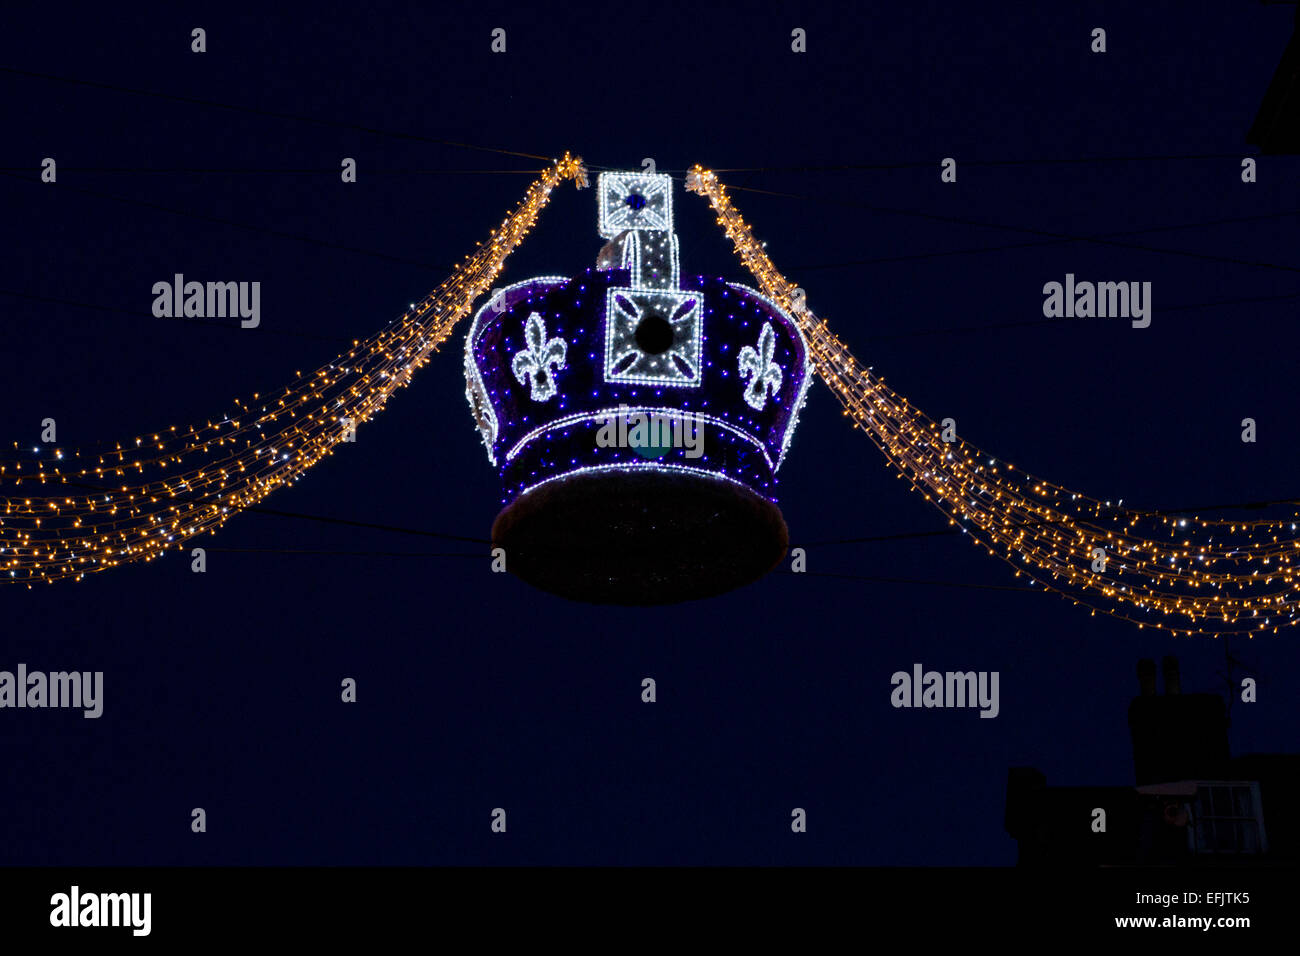 Une couronne mauve décoré de lumières de Noël suspendus dans la rue Peascod, près du château de Windsor, Berkshire, Angleterre en Janvier Banque D'Images